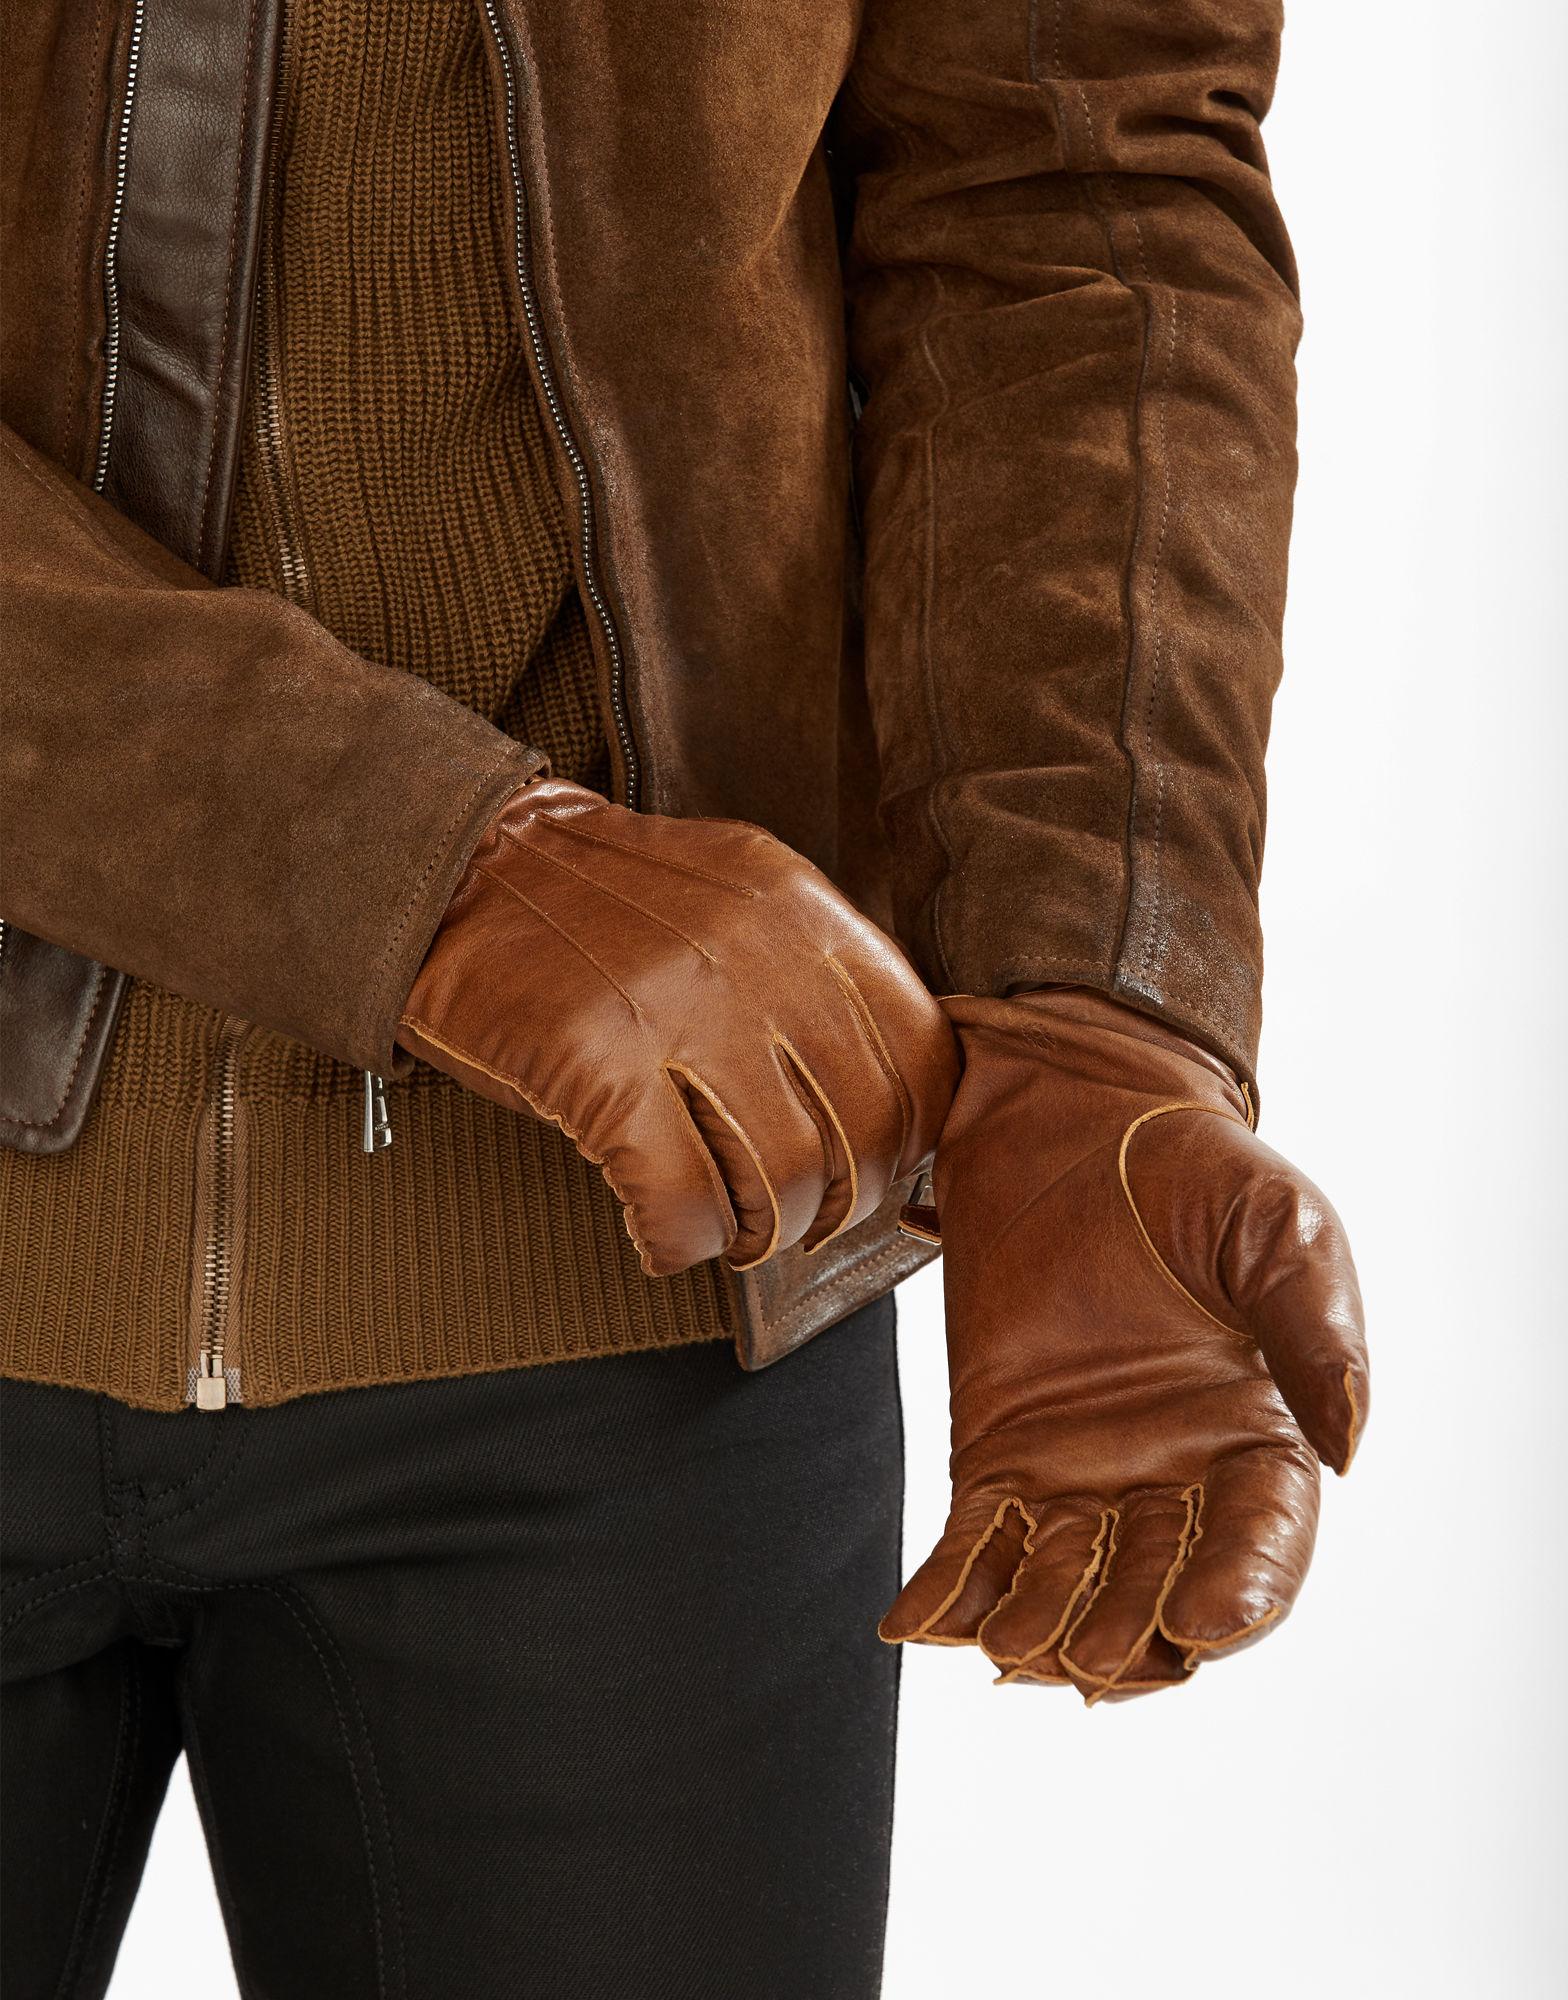 التعرفة تقييد الشرق belstaff mens leather gloves - yoursanfranciscoguide.com